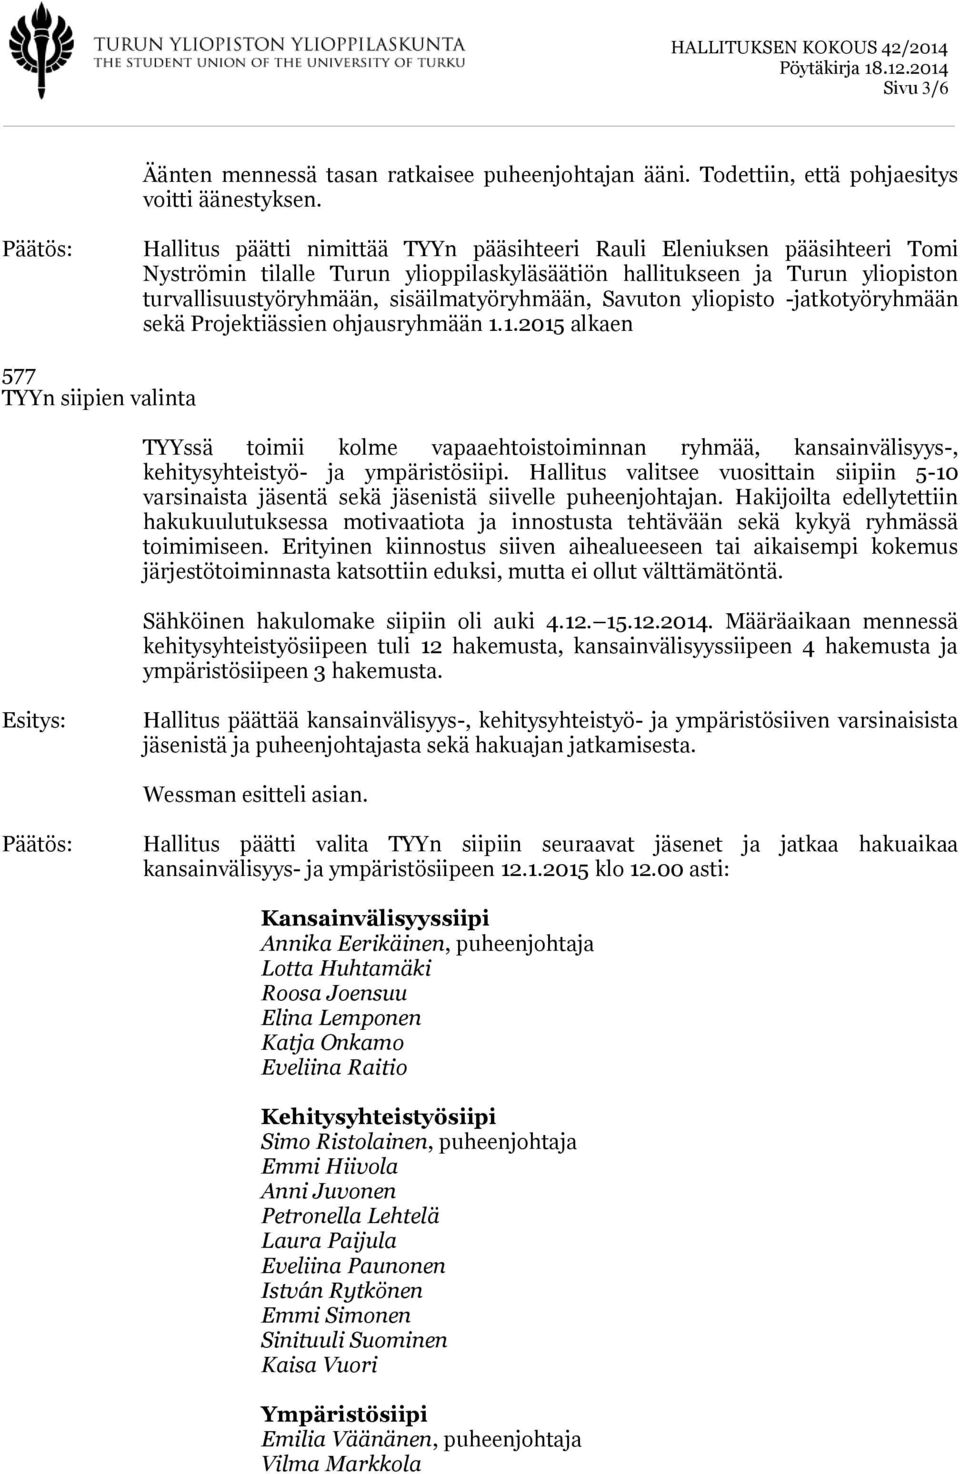 Savuton yliopisto -jatkotyöryhmään sekä Projektiässien ohjausryhmään 1.